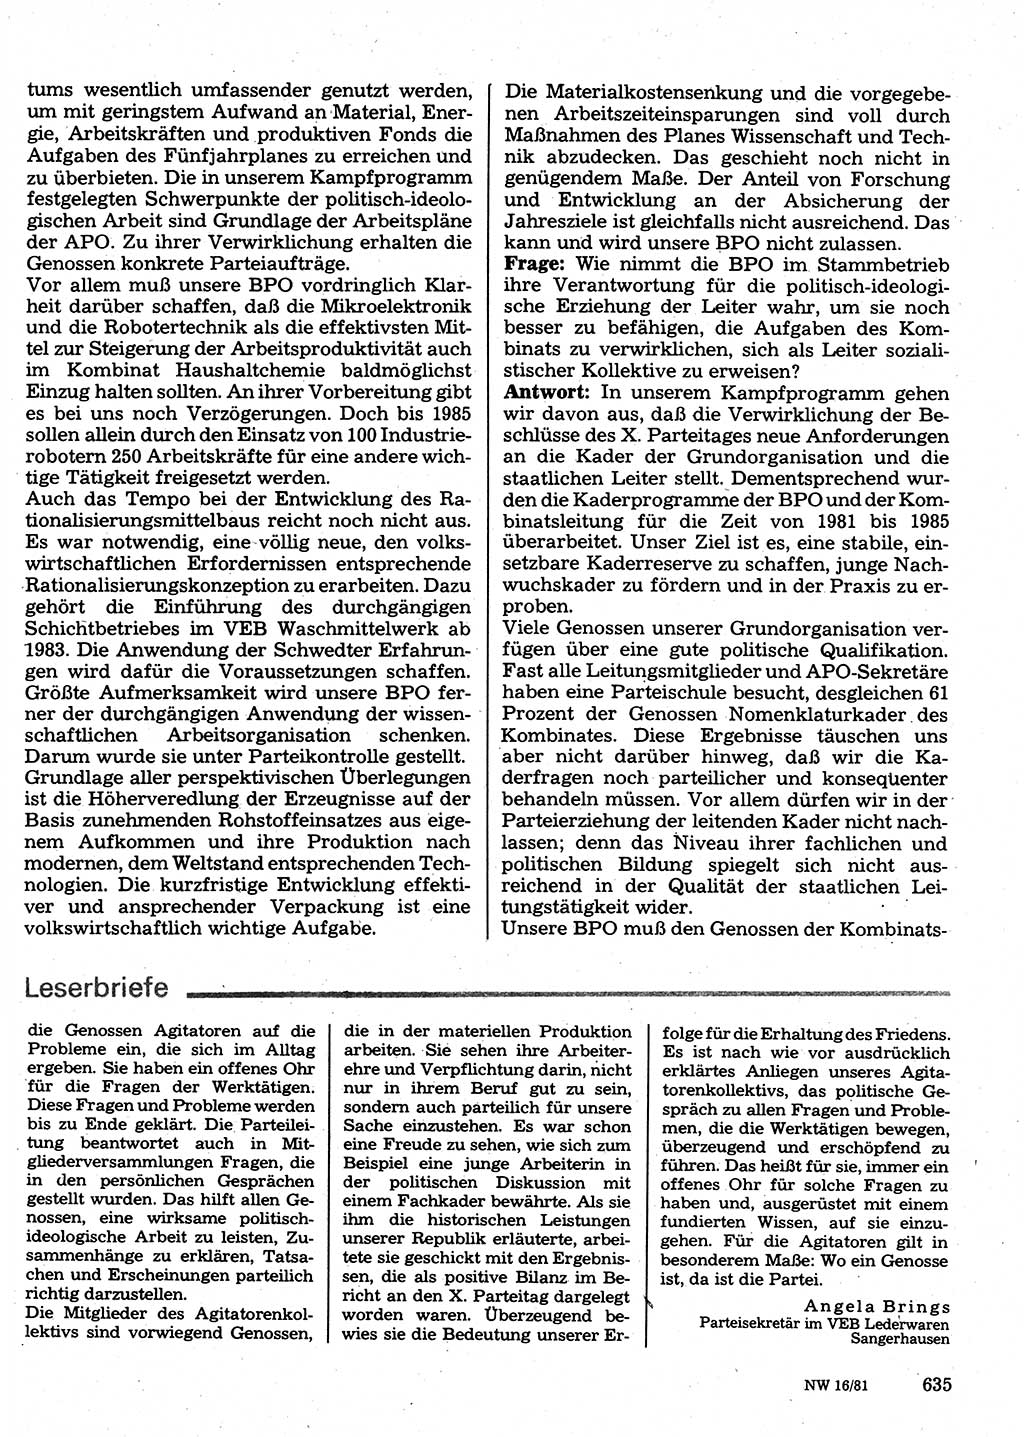 Neuer Weg (NW), Organ des Zentralkomitees (ZK) der SED (Sozialistische Einheitspartei Deutschlands) für Fragen des Parteilebens, 36. Jahrgang [Deutsche Demokratische Republik (DDR)] 1981, Seite 635 (NW ZK SED DDR 1981, S. 635)